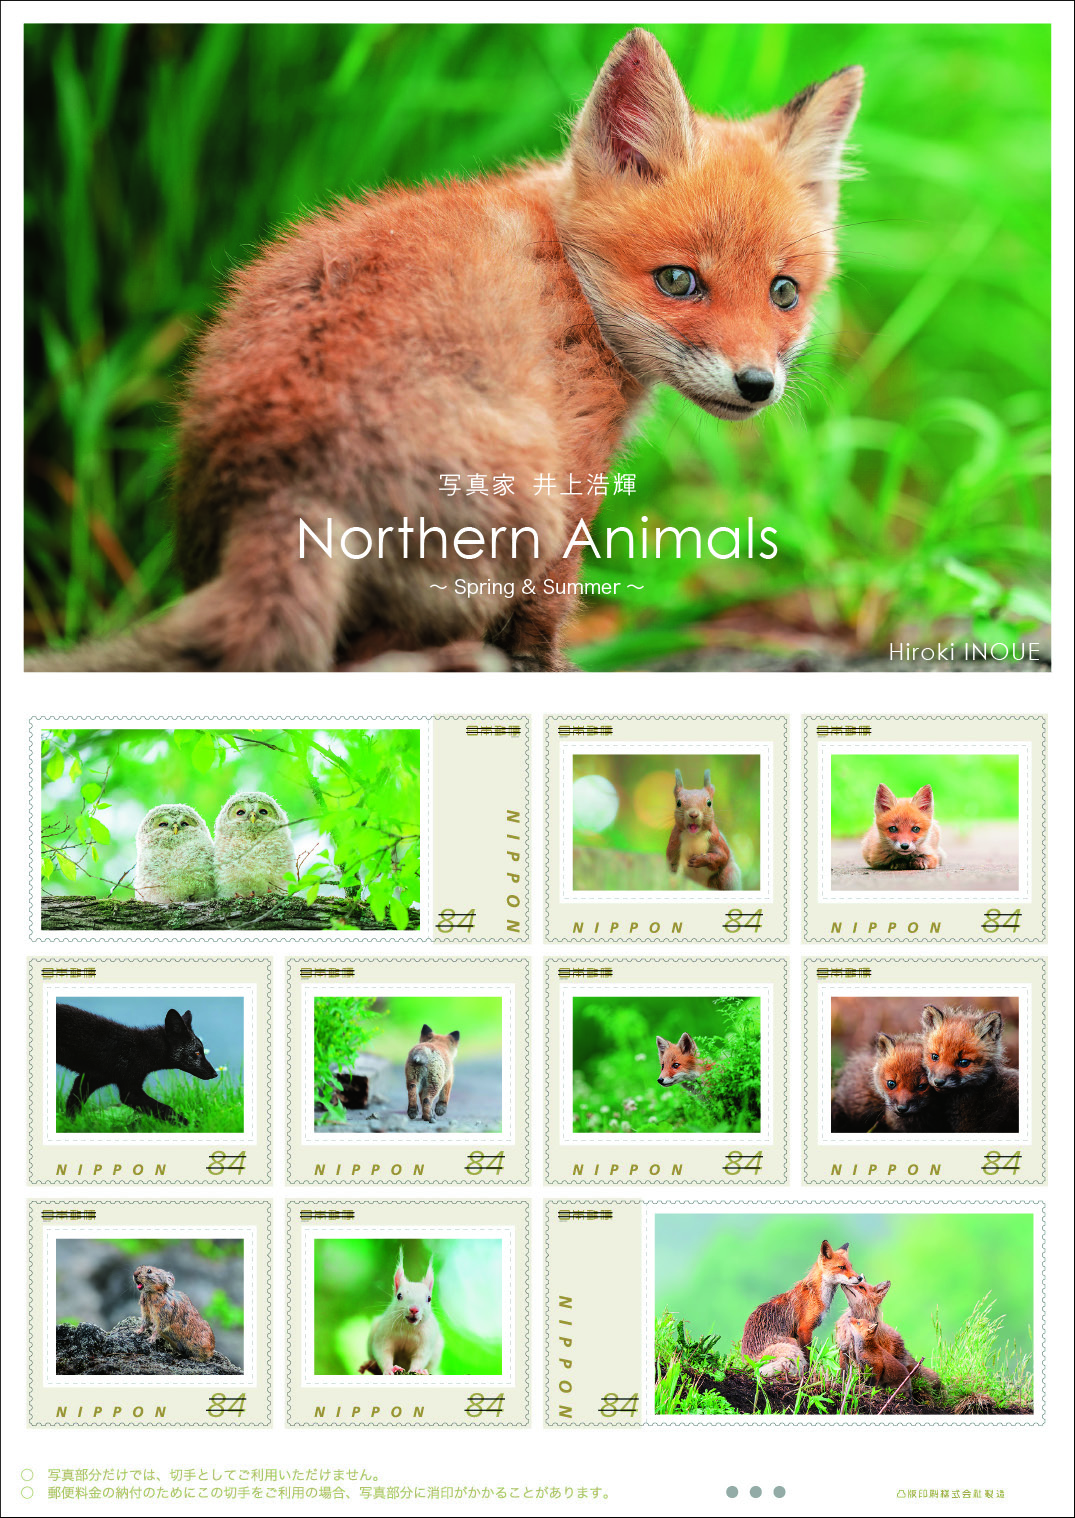 オリジナル フレーム切手セット 「写真家 井上浩輝 Northern Animals ～Spring＆Summer～」の販売開始